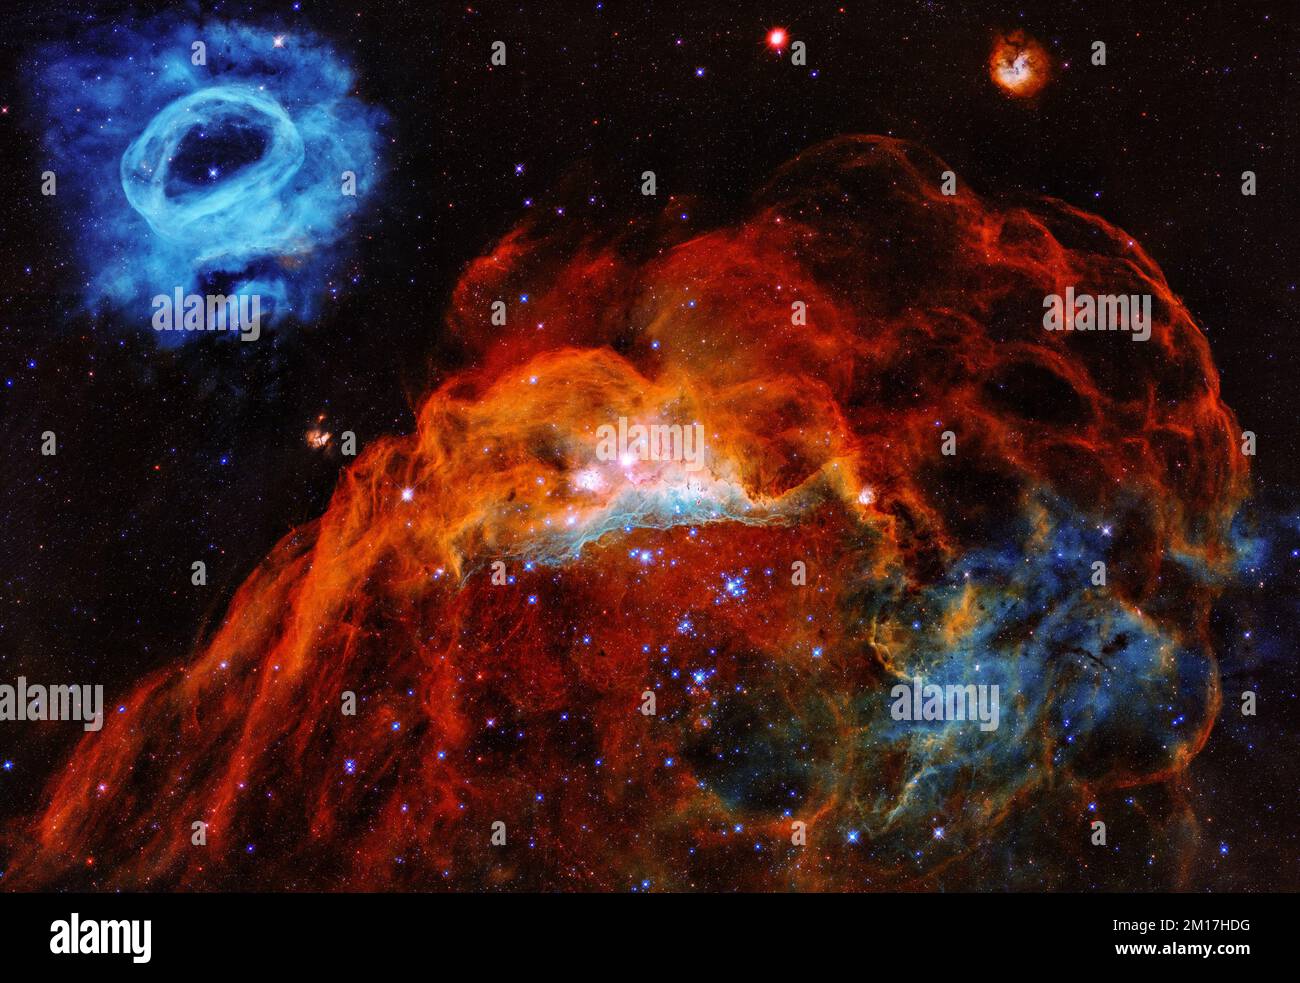 Grande nuvola Magellanica nella Via Lattea che mostra una nebulosa rossa gigante e una nebulosa blu più piccola. Ottimizzato digitalmente. Elementi di immagine forniti dalla NASA Foto Stock